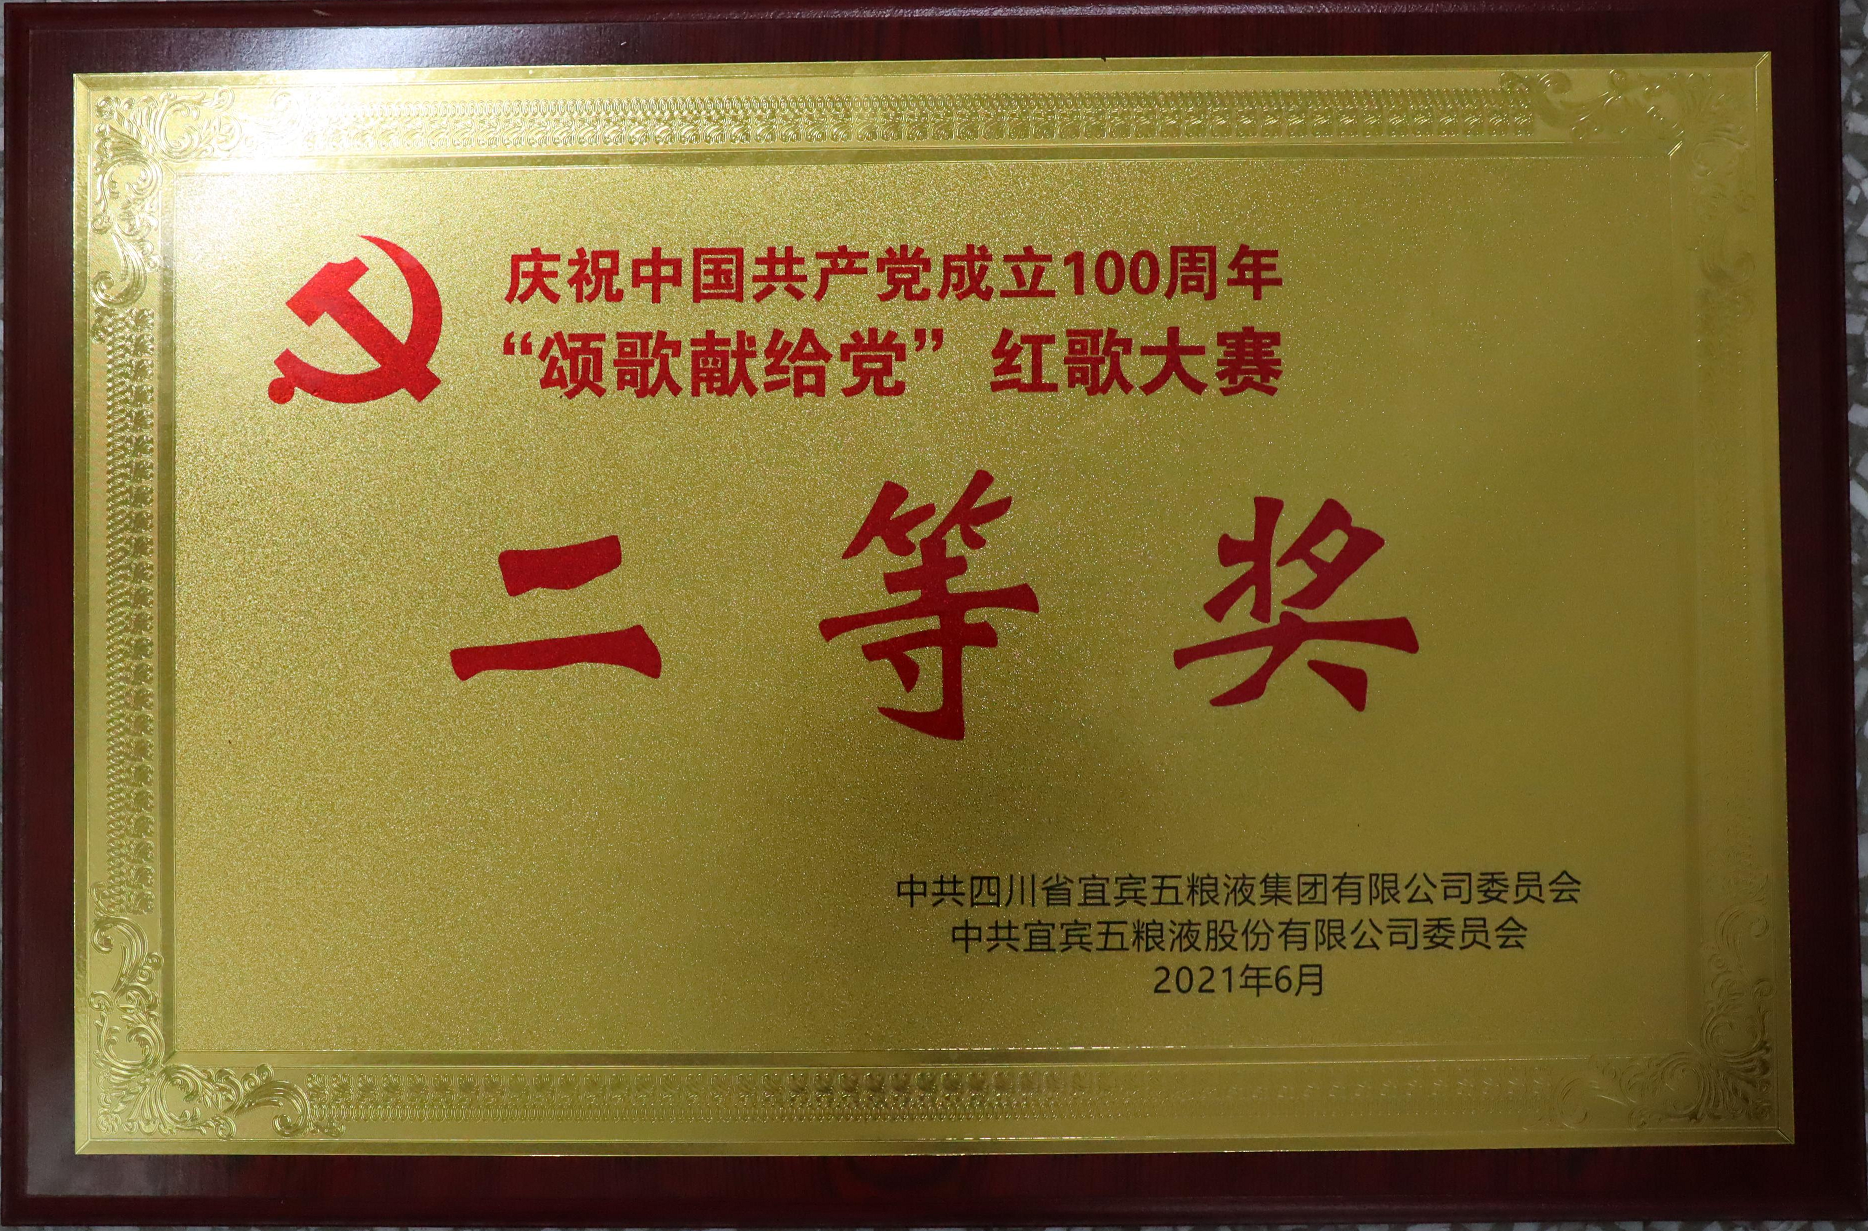 慶祝中國共產黨成立100周年“頌歌獻給黨”紅歌大賽  二等獎